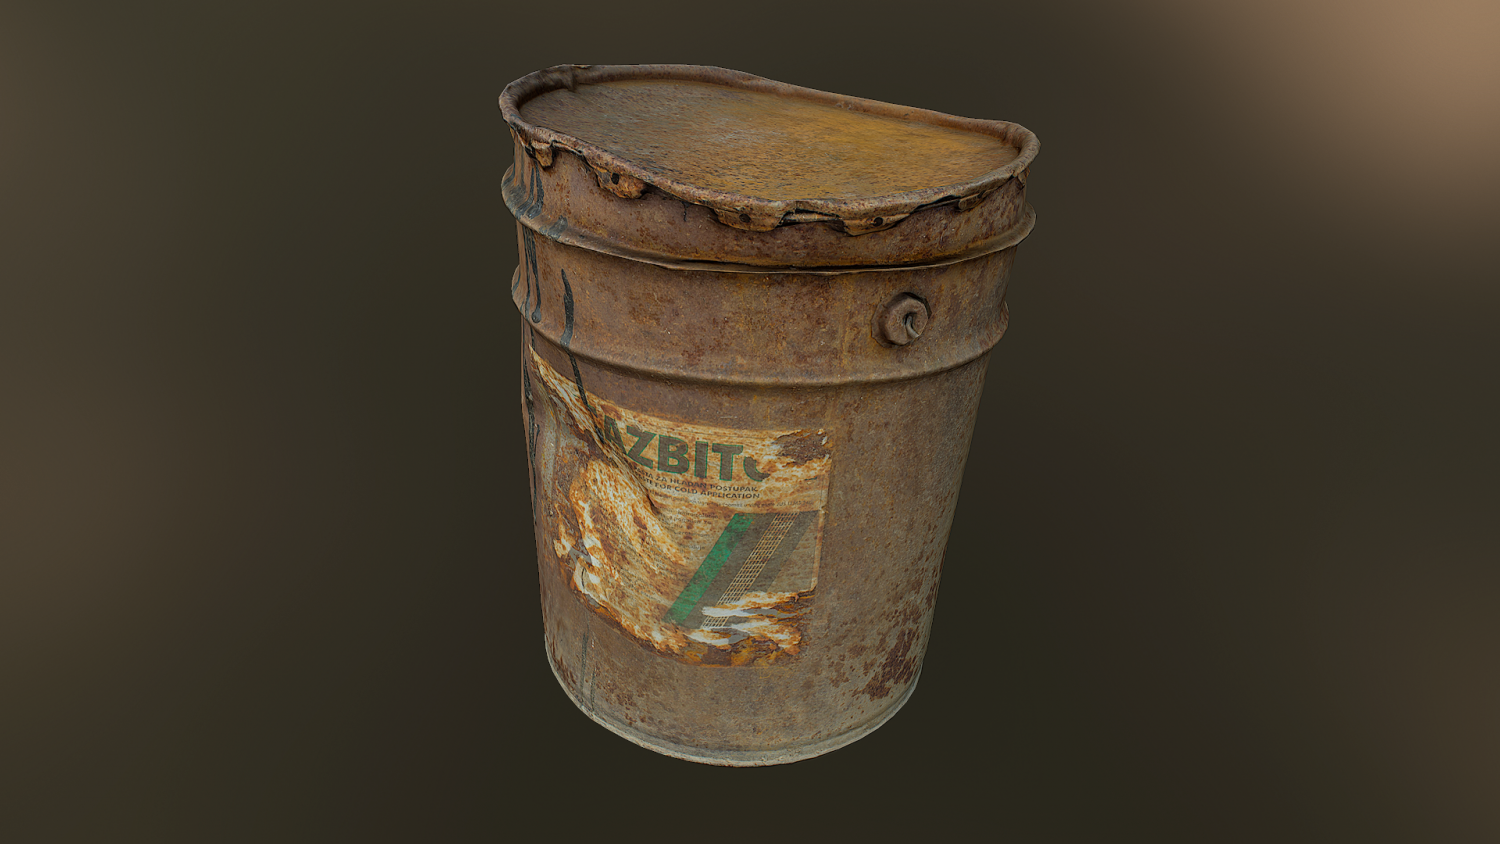 Instant barrel rust фото 57